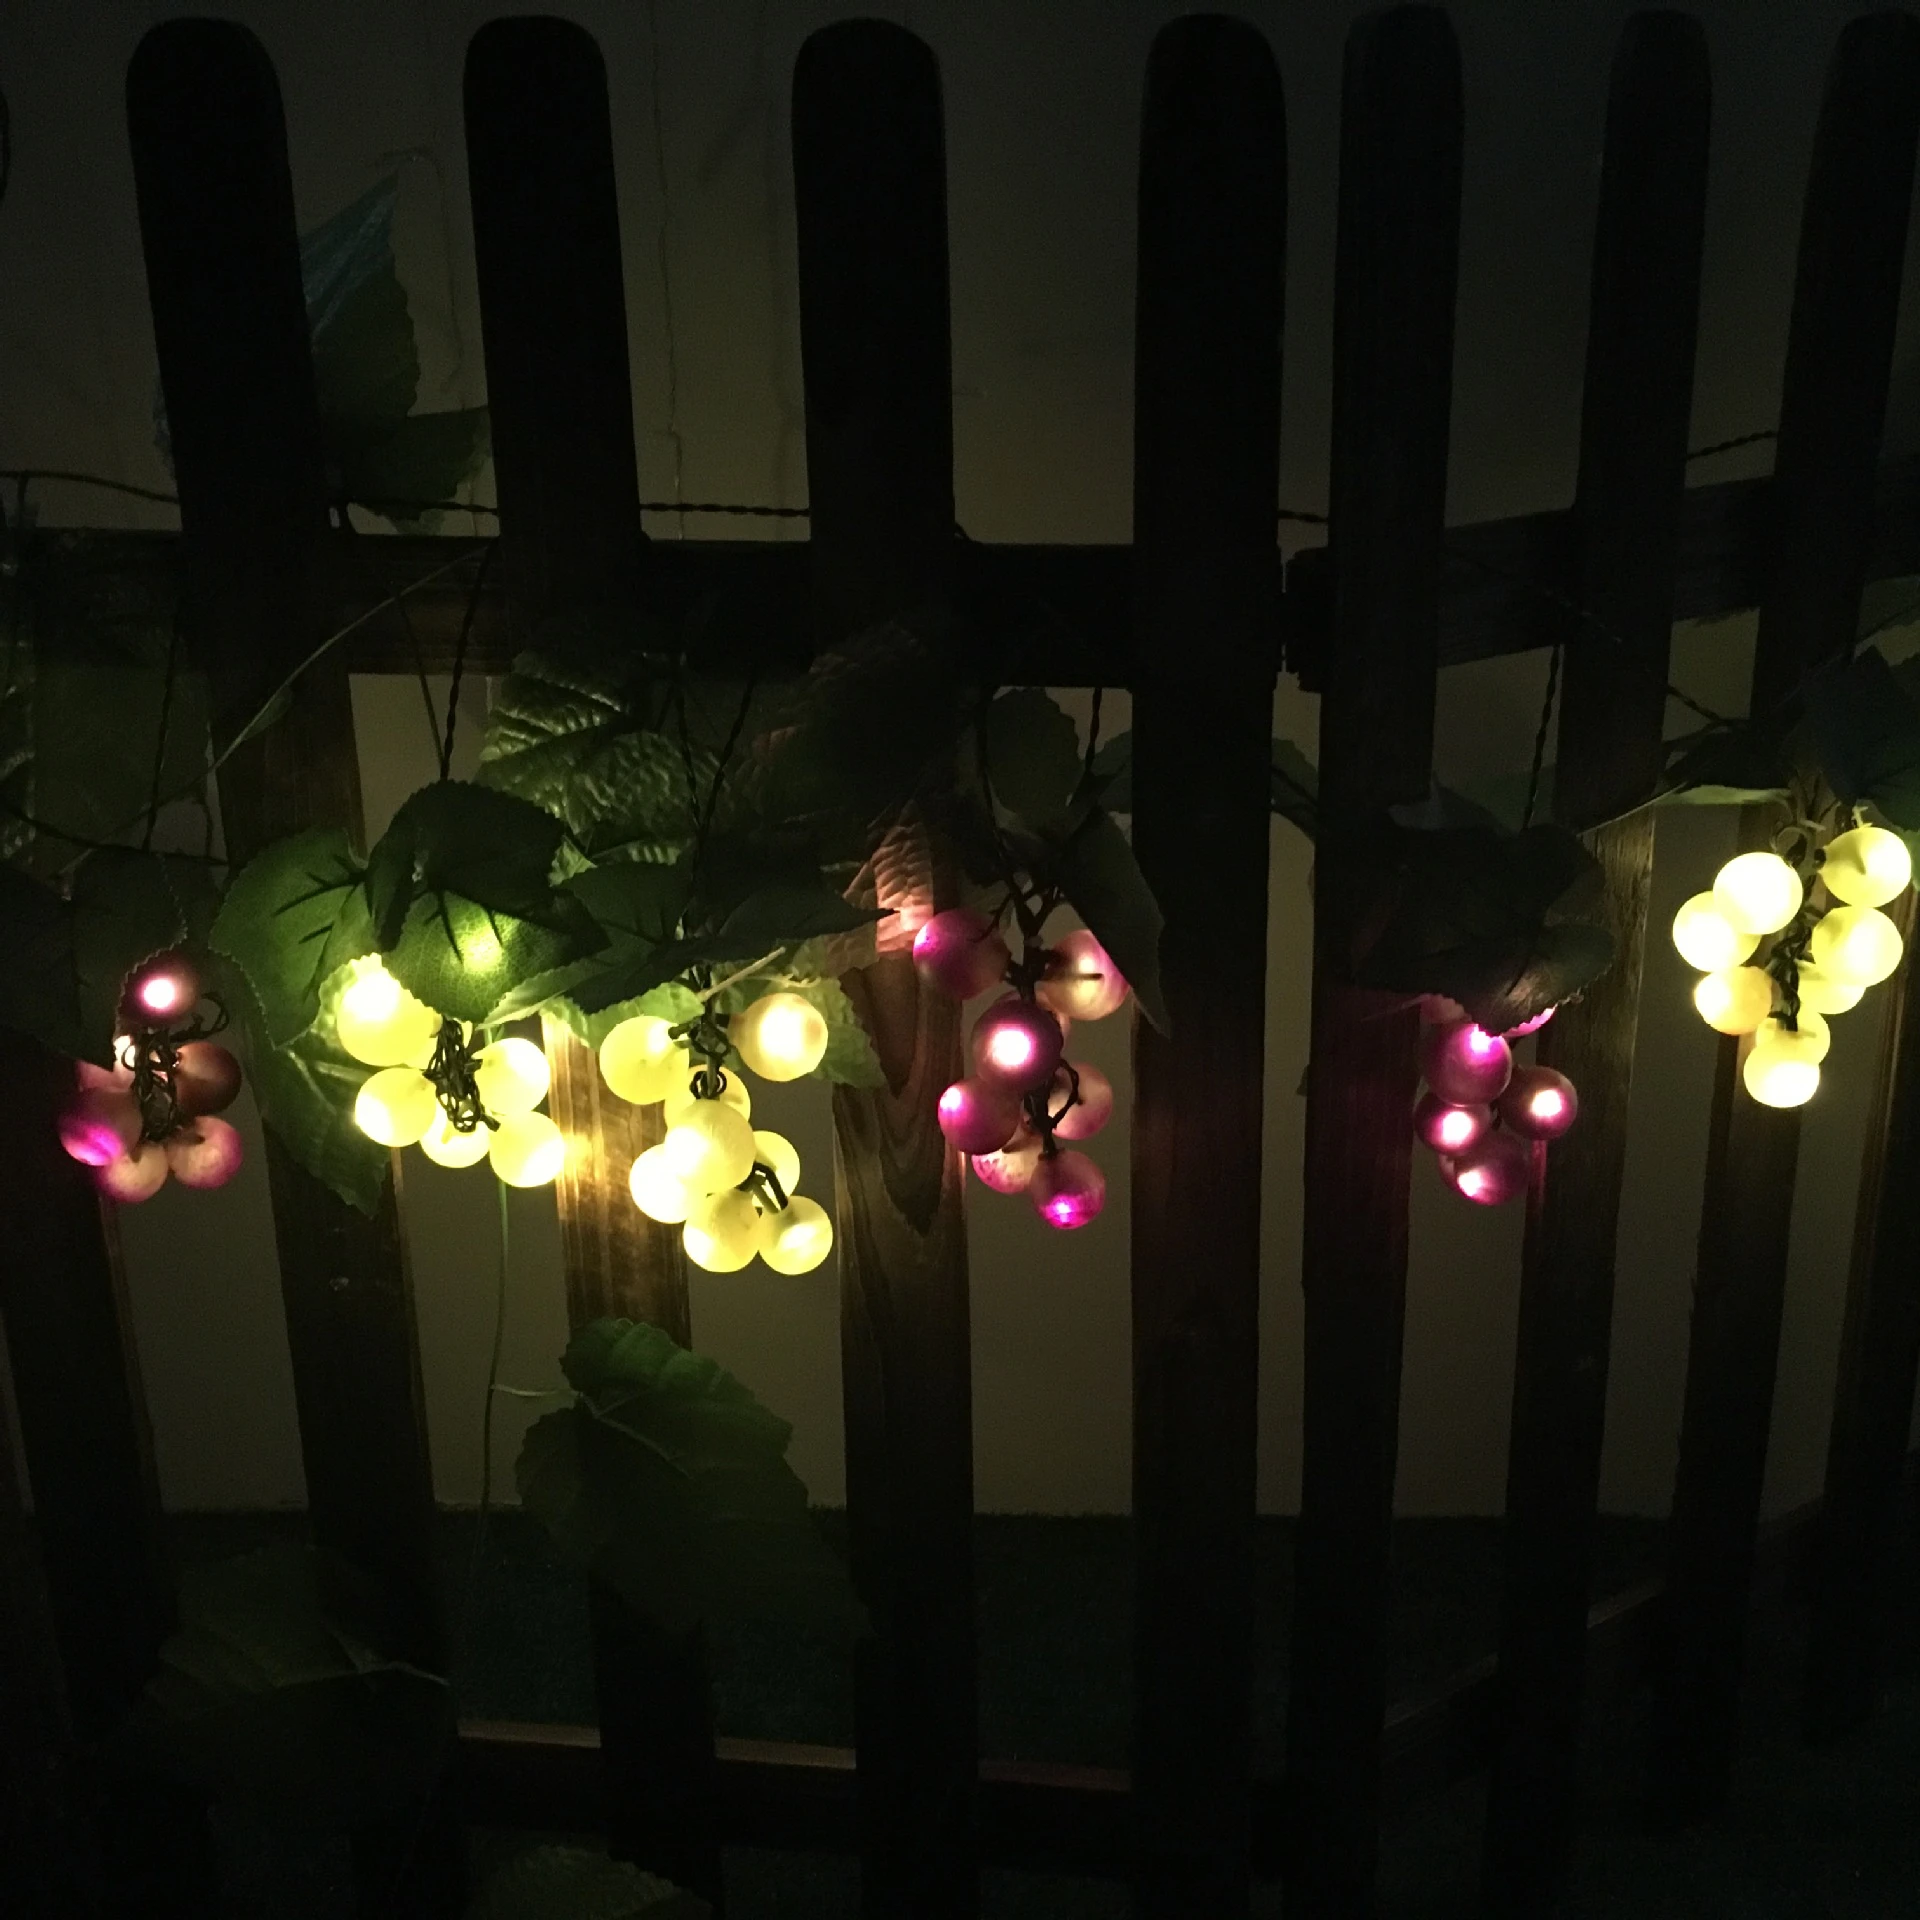 ingewikkeld Inloggegevens kwaadheid de vrije loop geven Solar Led String Fairy Buitenverlichting 80 Led Druif Lichten Waterdichte  Lamp Voor Thuis Gordijn Tuin Yard Patio Vakantie Decoratie|Zonnenlamp| -  AliExpress